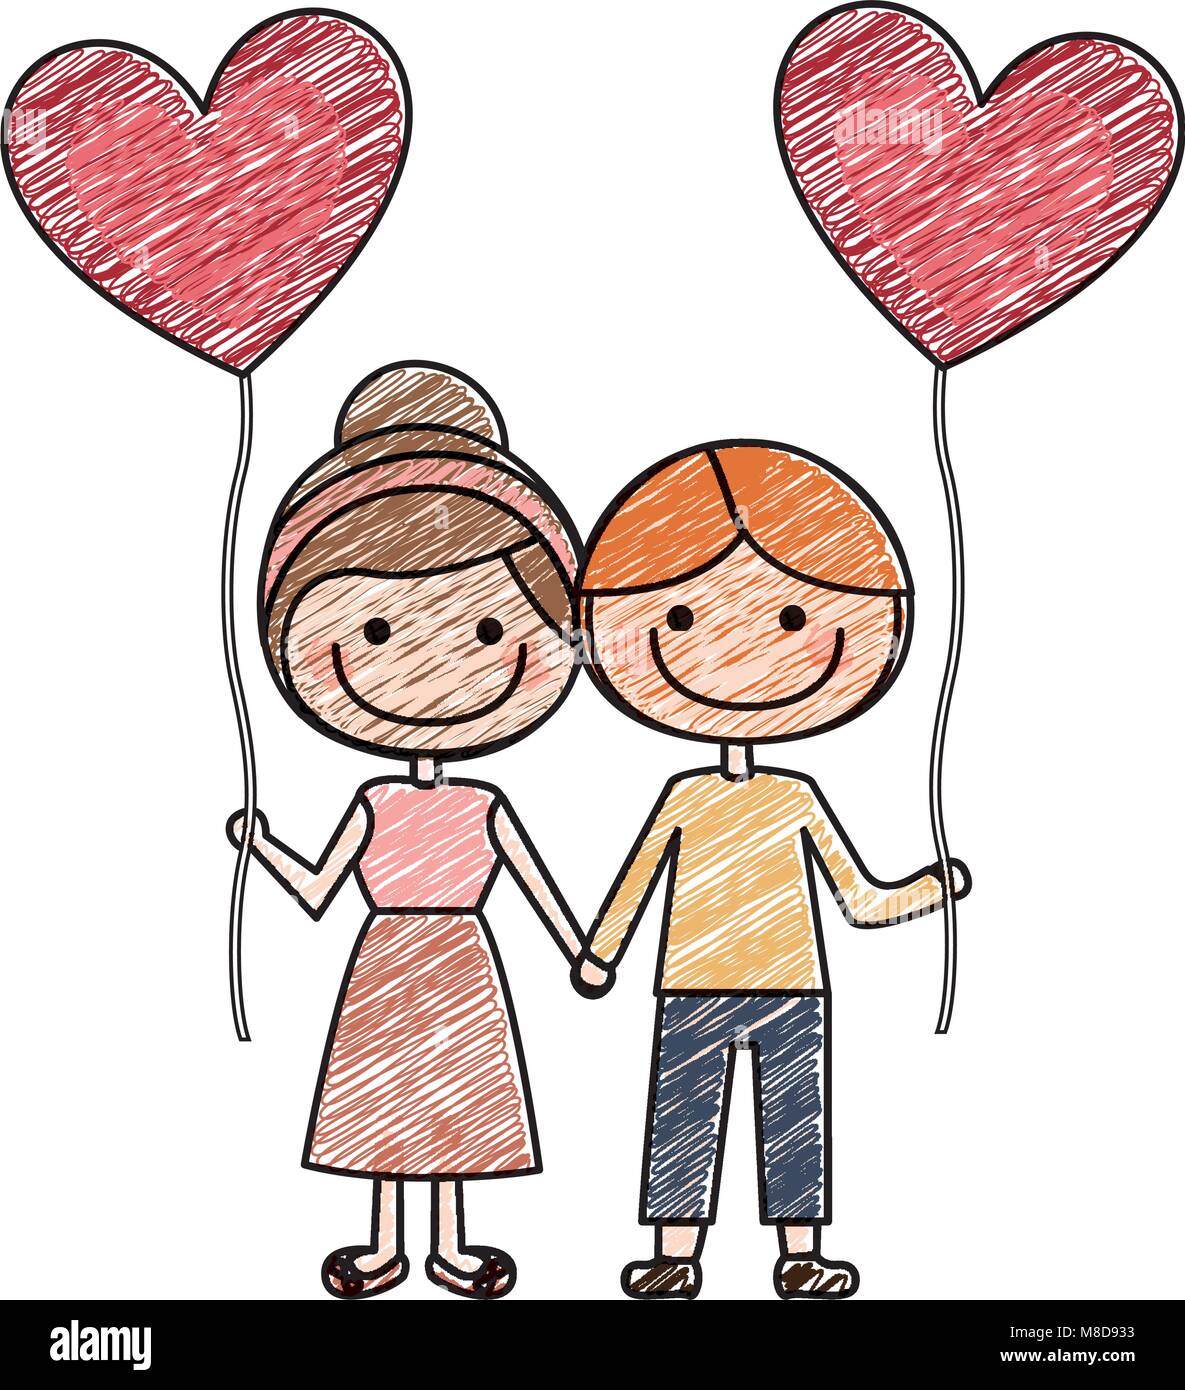 Disegno a matita colorata di caricatura di un ragazzo e una ragazza con  palloncino a forma di cuore Immagine e Vettoriale - Alamy